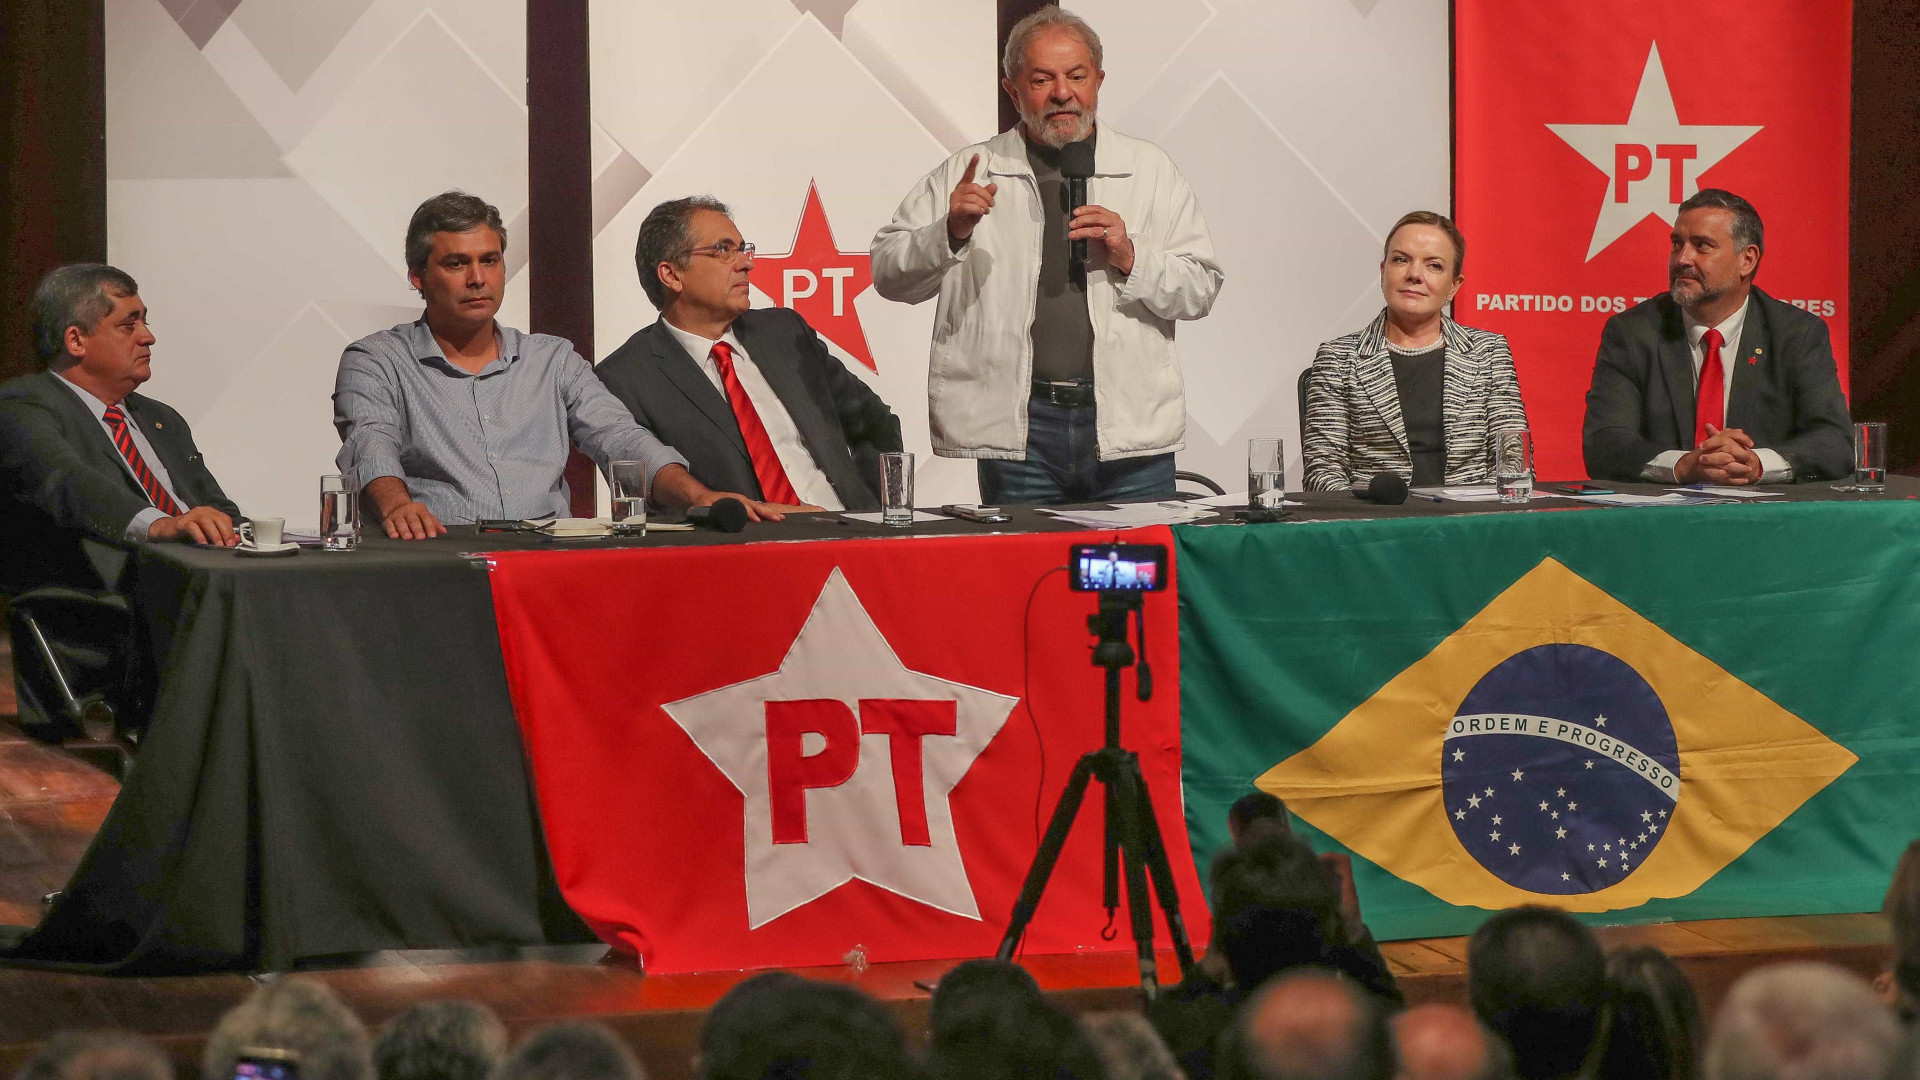 'Não quero ser candidato se for culpado', diz Lula